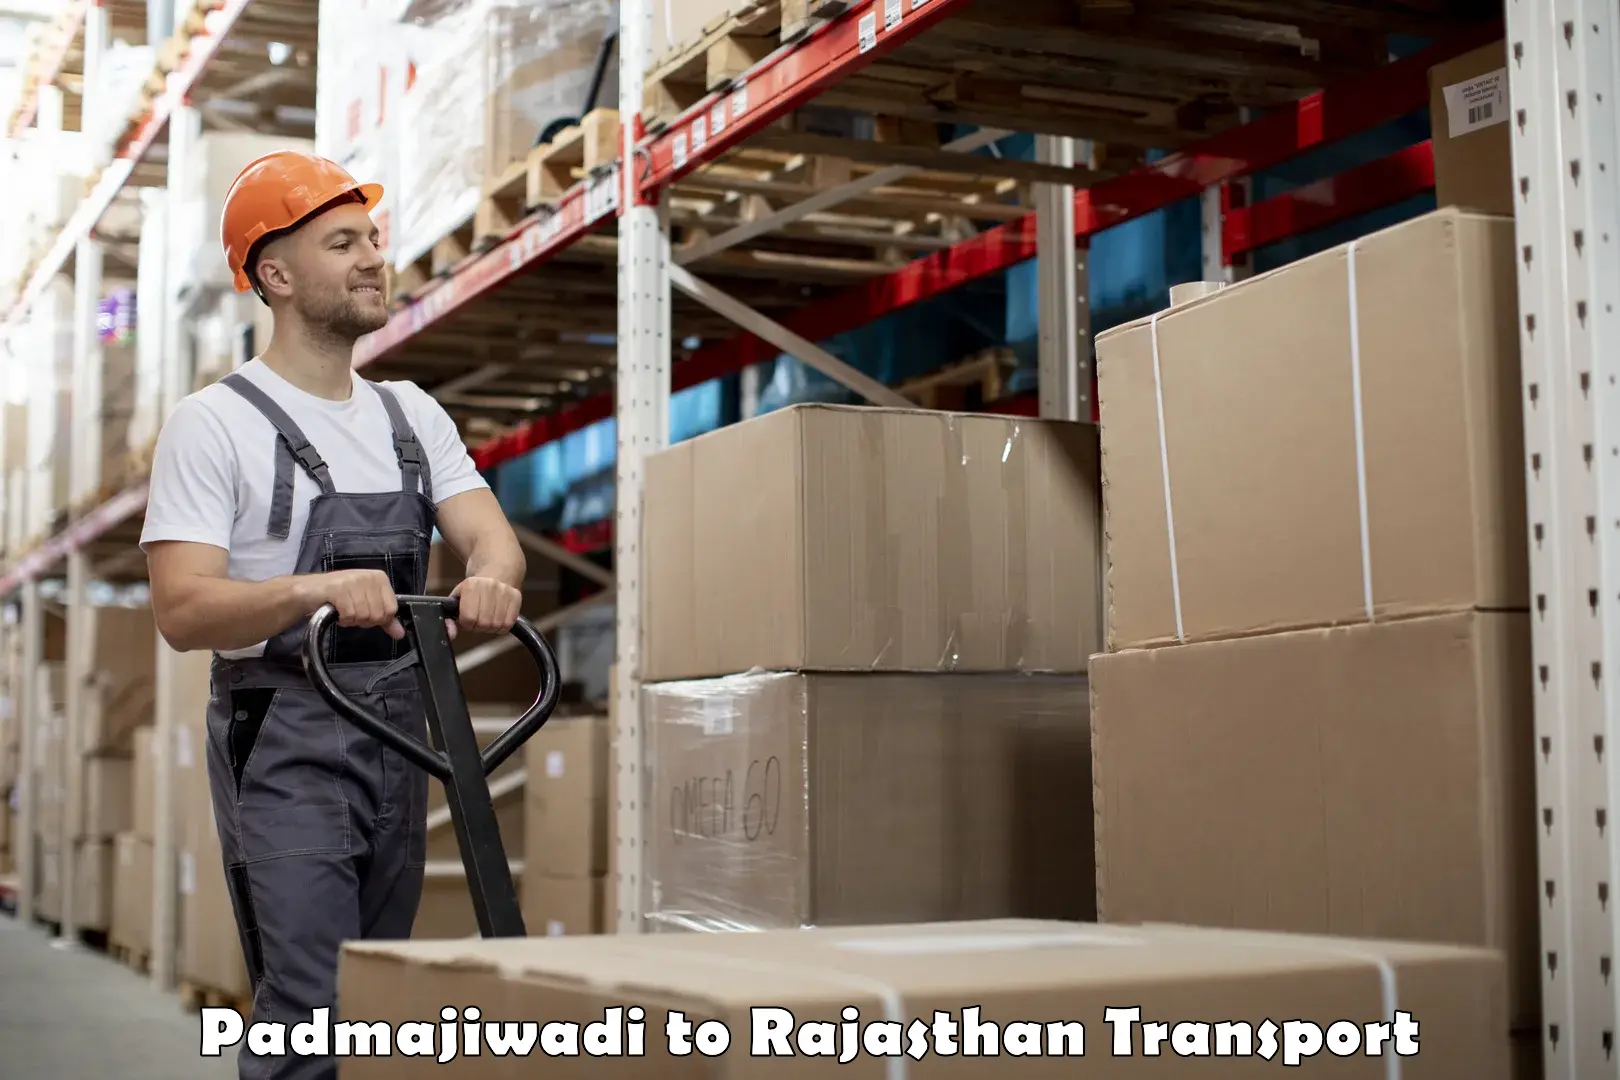 Commercial transport service Padmajiwadi to Rajasthan